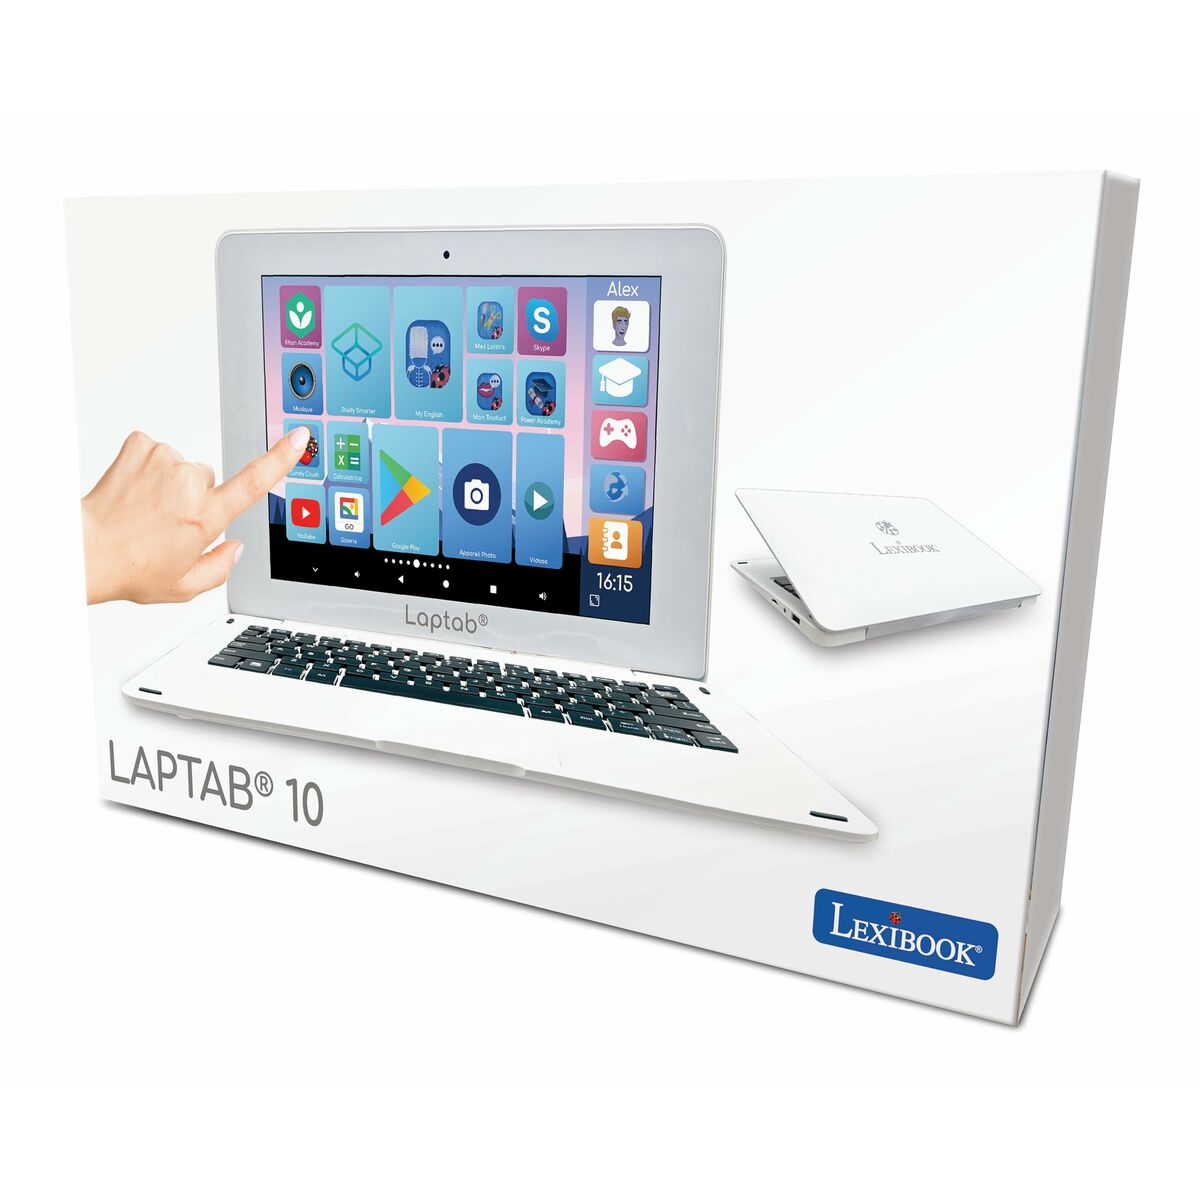 Bērnu Portatīvais dators Lexibook Laptab 10 4 GB RAM Balts Bērnu